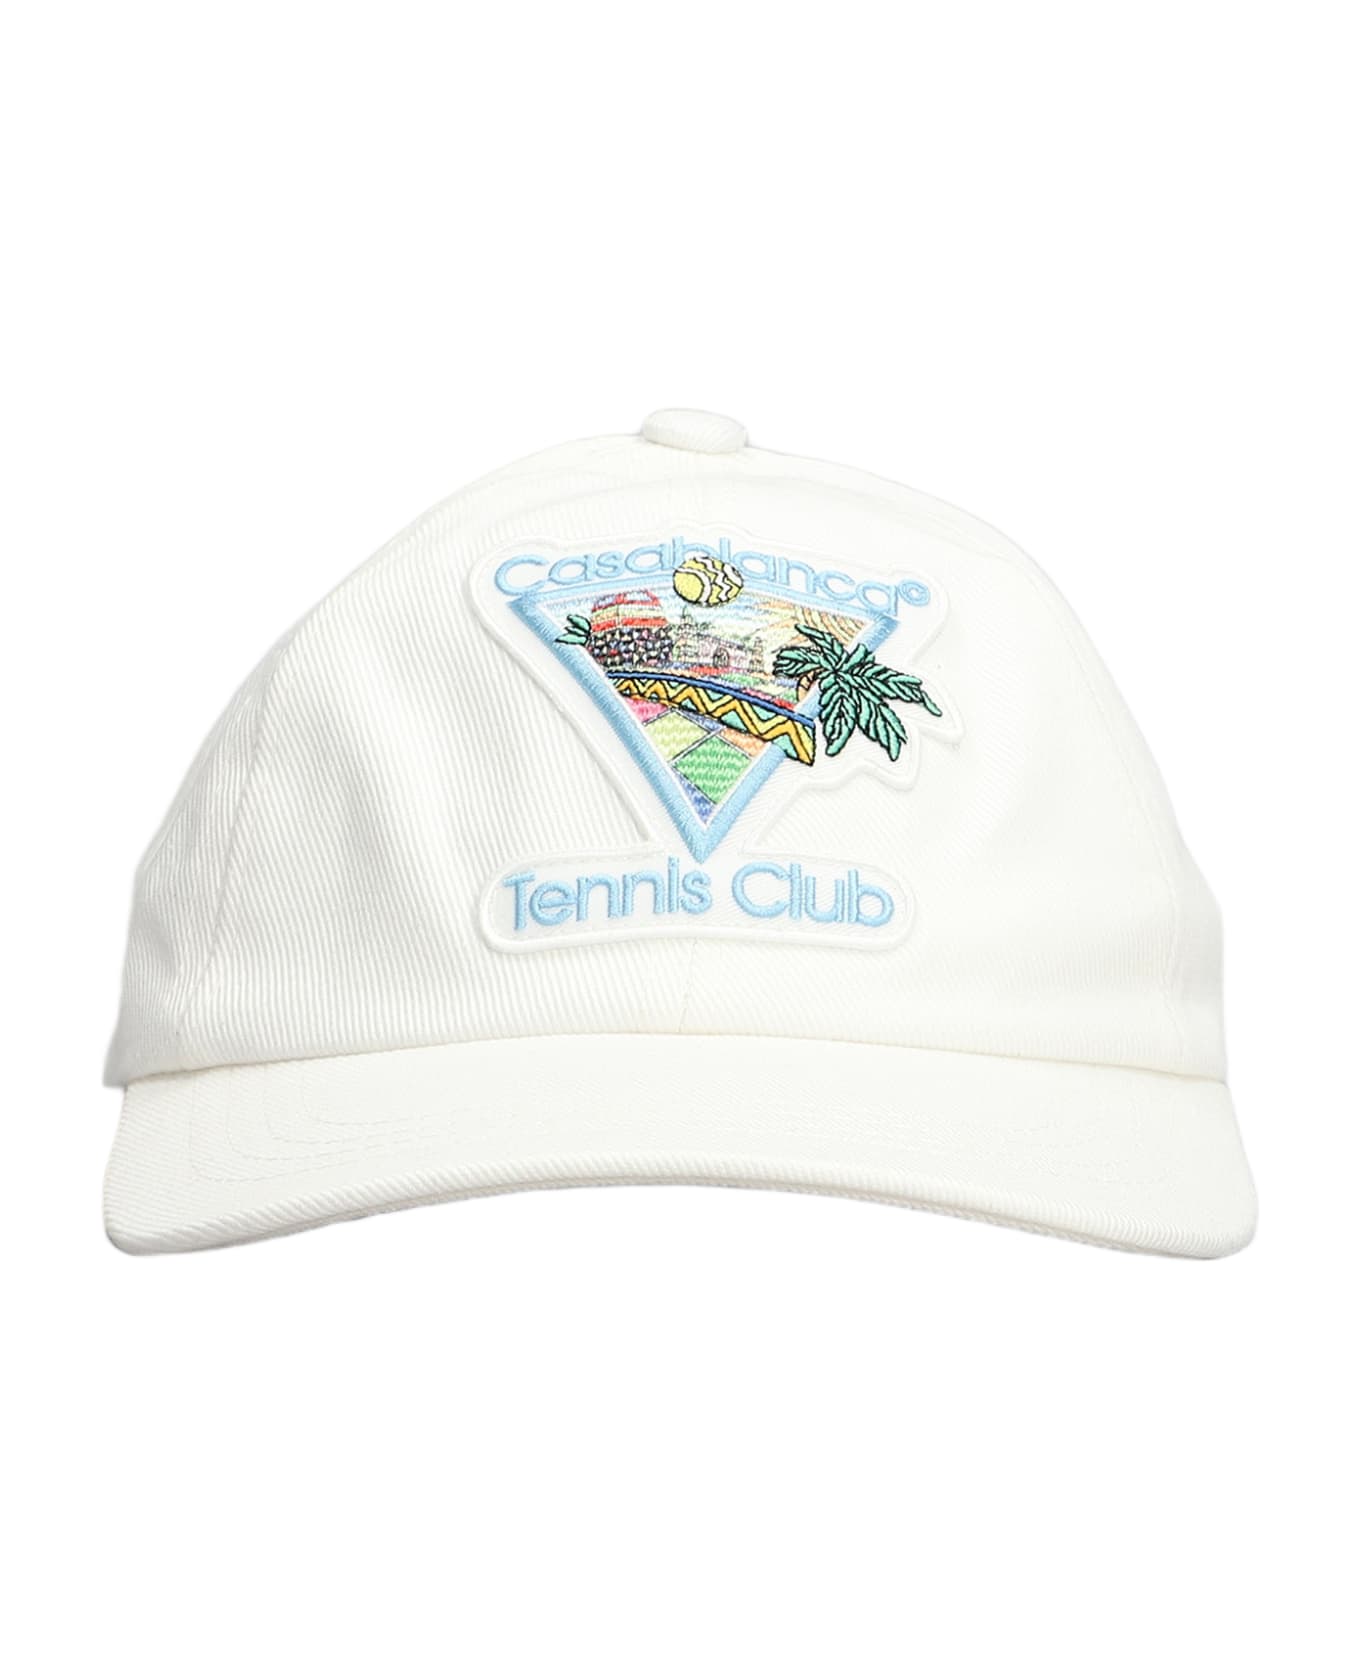 Casablanca Afro Cubism Tennis Club Cap - OFF-WHITE 帽子